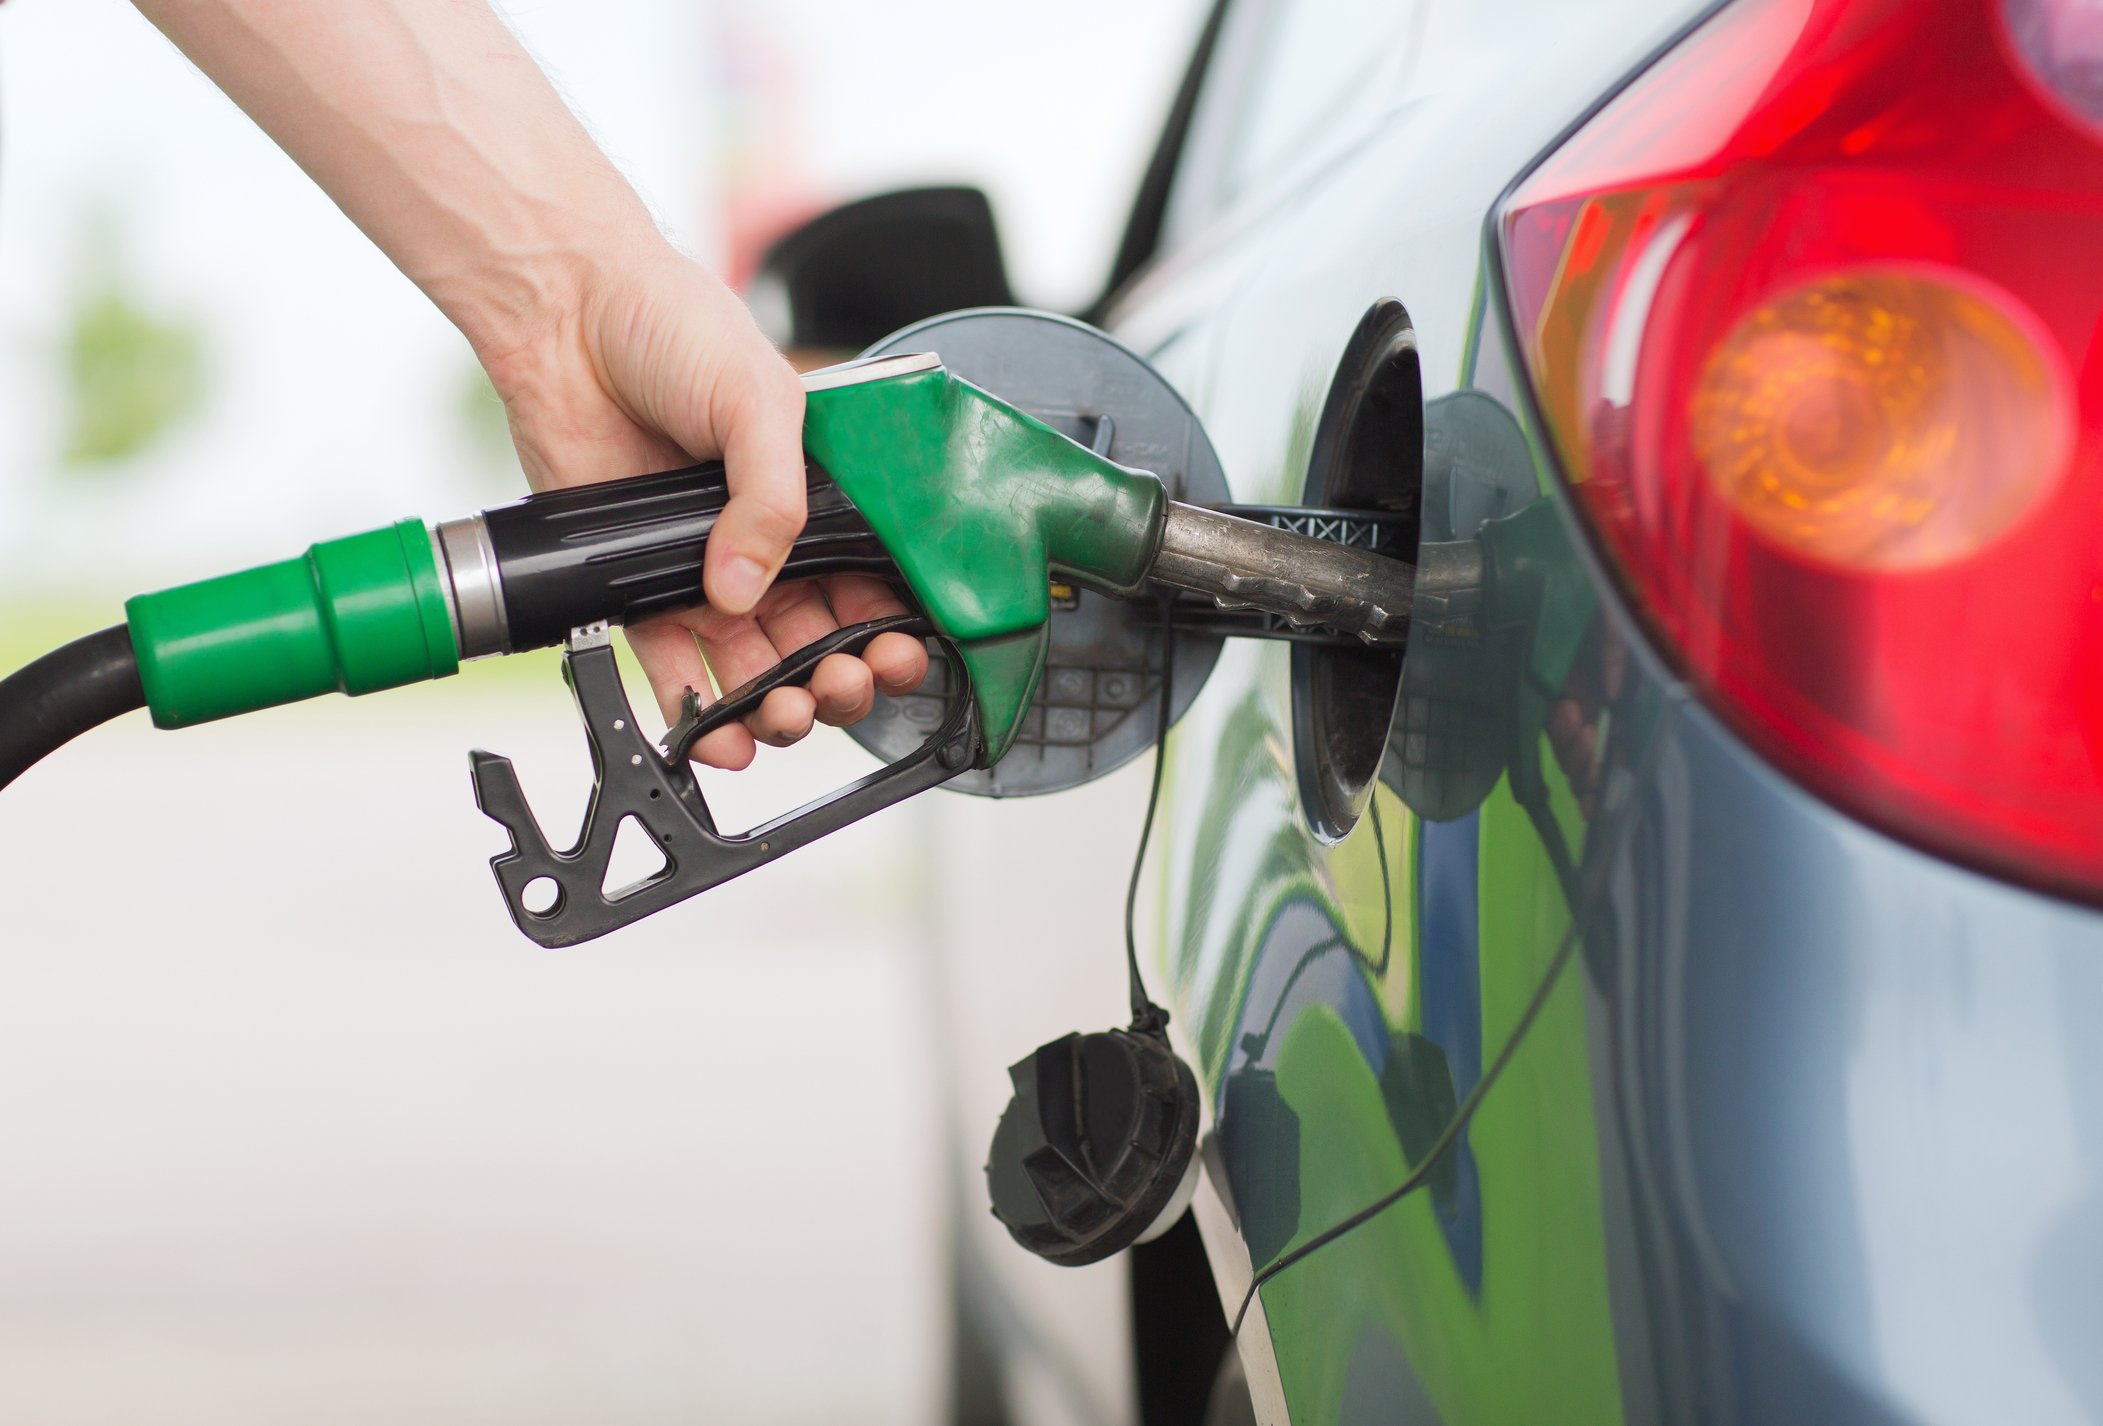 Guvernul va compensa la pompă prețul la motorină și benzină pentru trei luni -